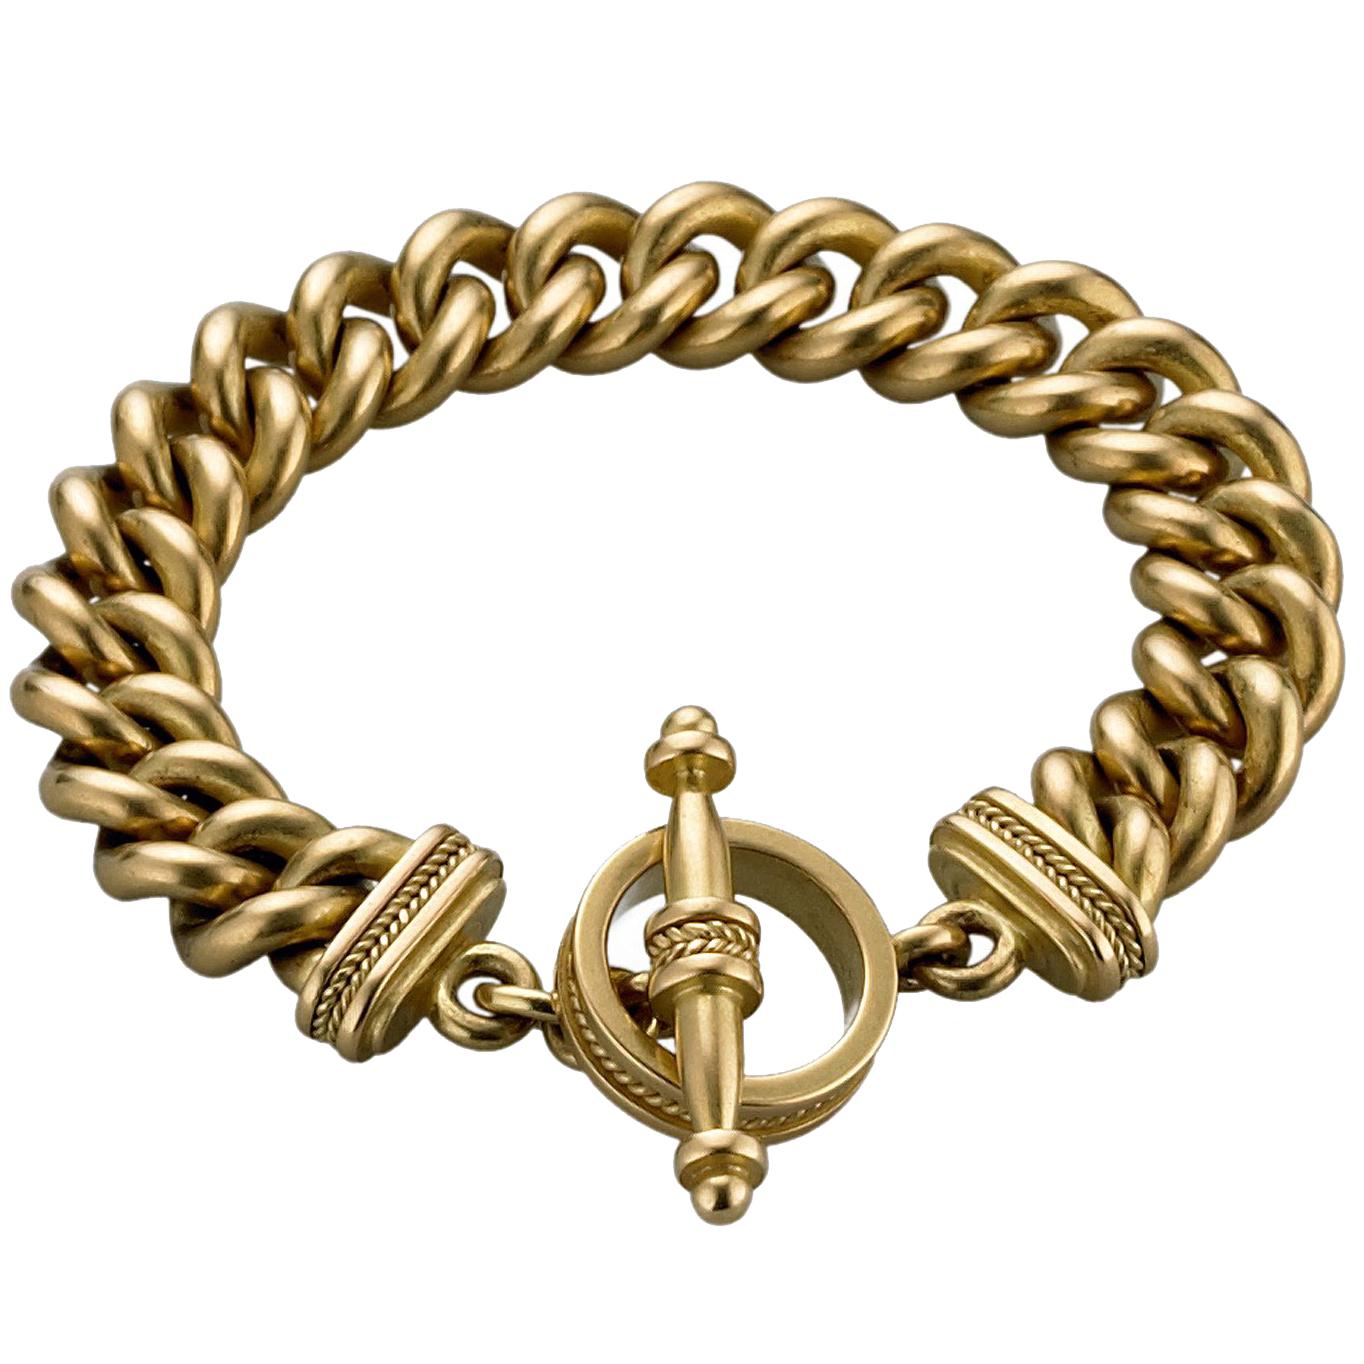  18 Karat Gold Curb Link Toggle Bracelet